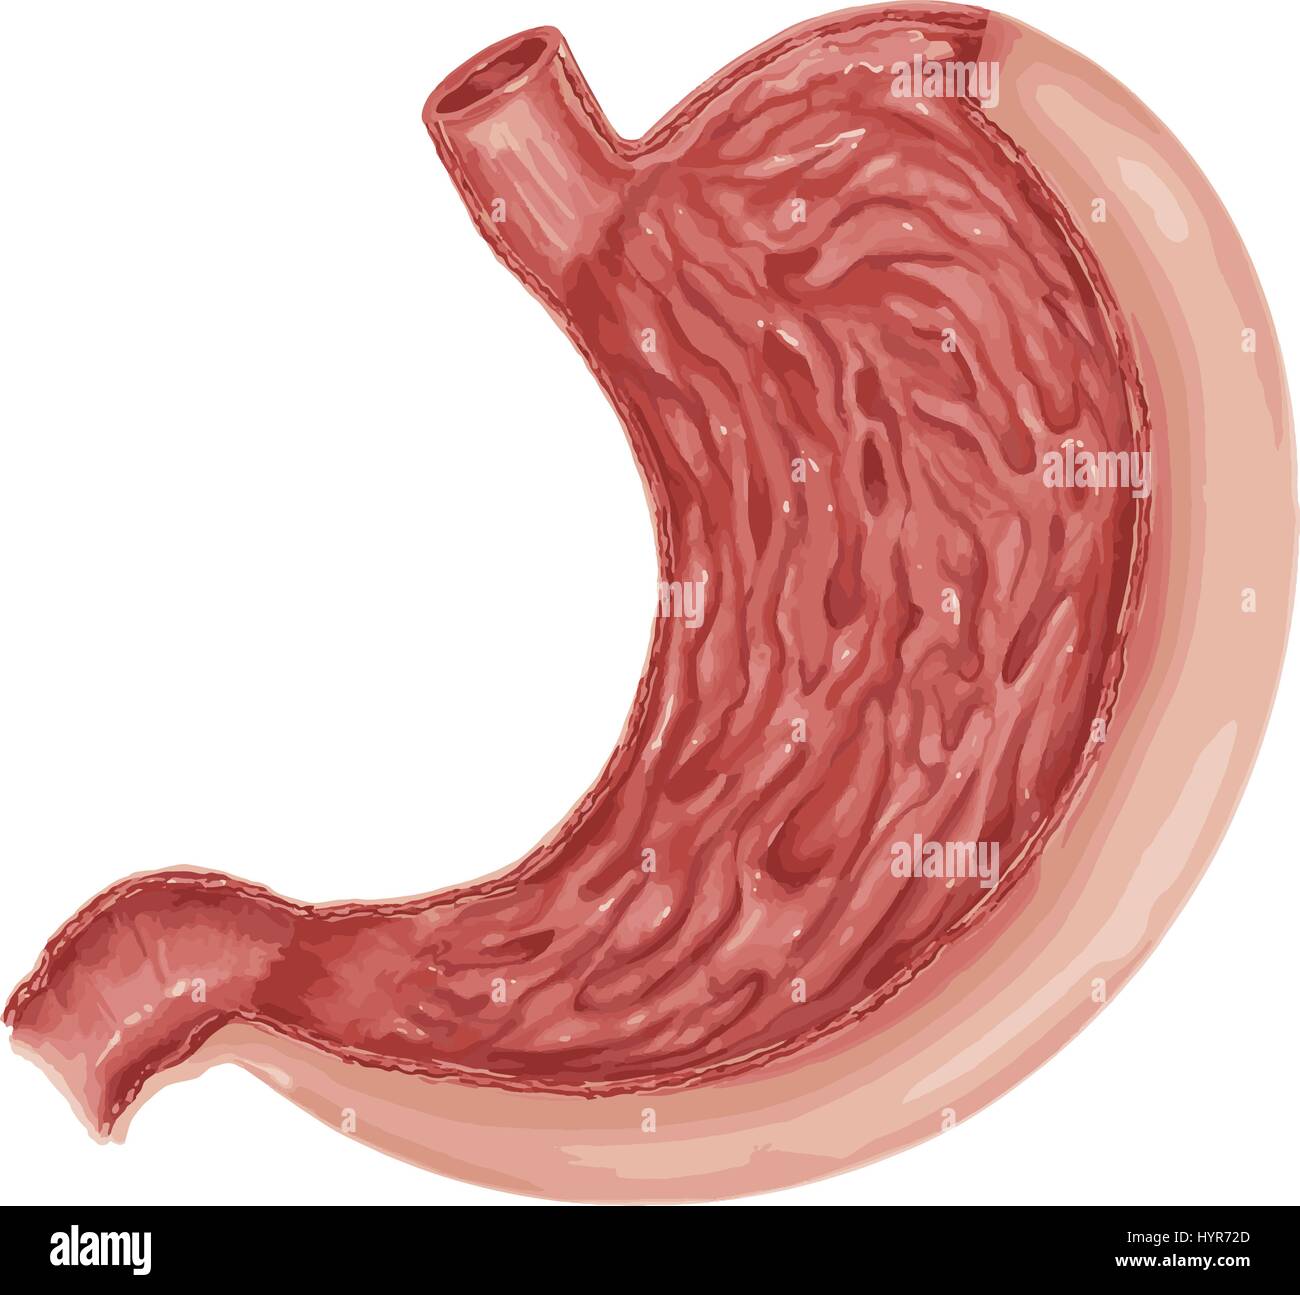 Illustrazione del diagramma di stomaco umano anatomia Illustrazione Vettoriale